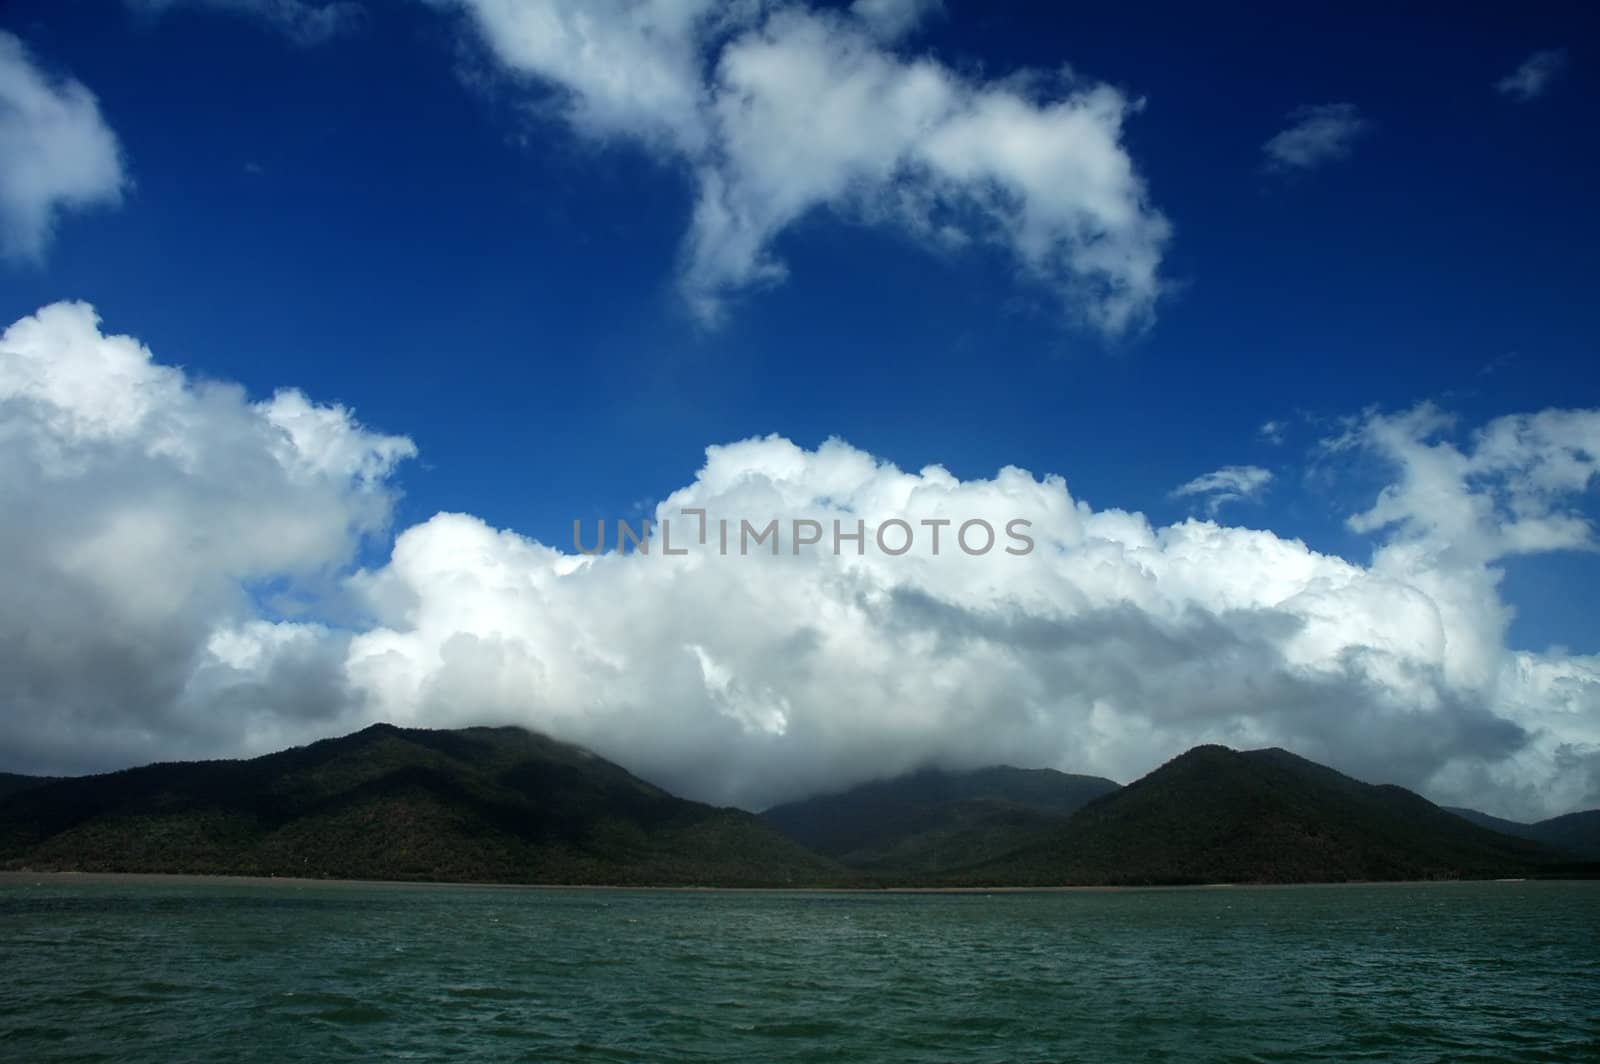 green ocean, green forest mountains, dark blue sky, clouds, ocean view, photo taken near Cairns